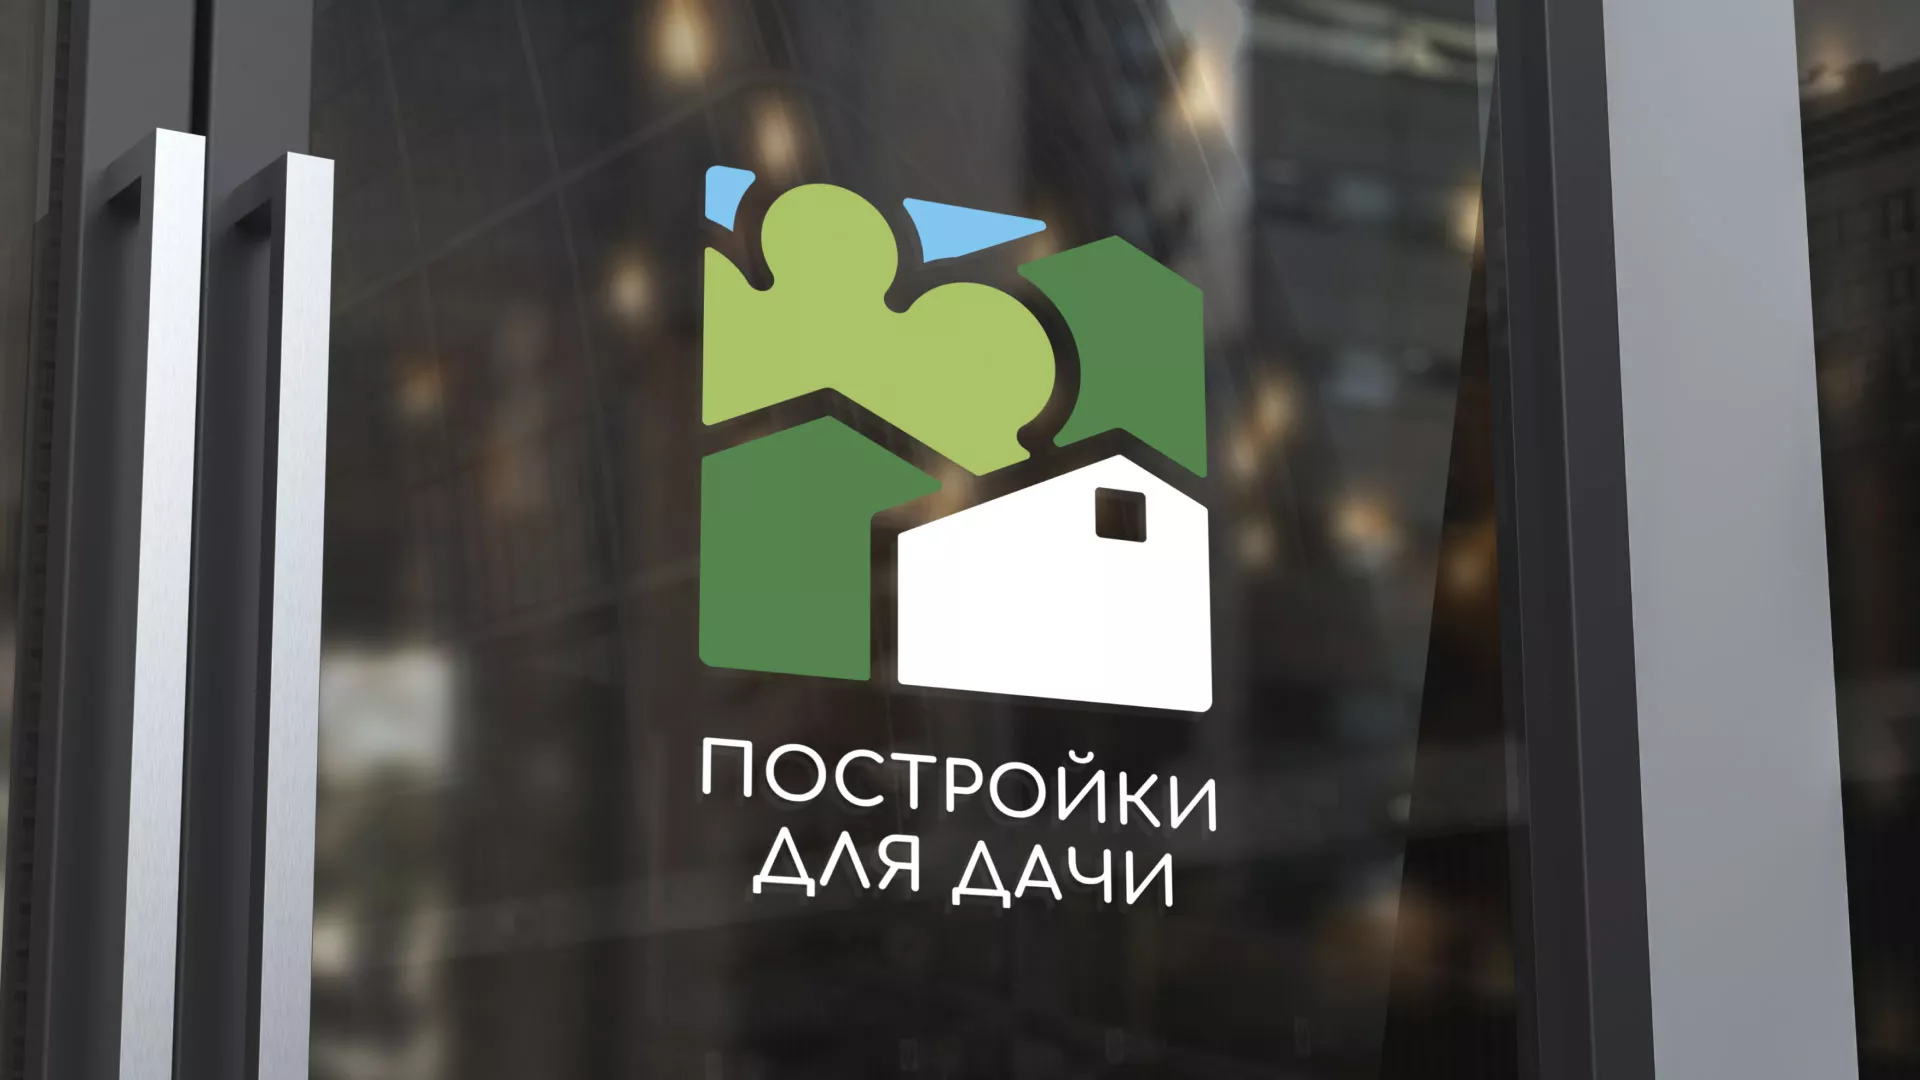 Разработка логотипа в Малмыже для компании «Постройки для дачи»